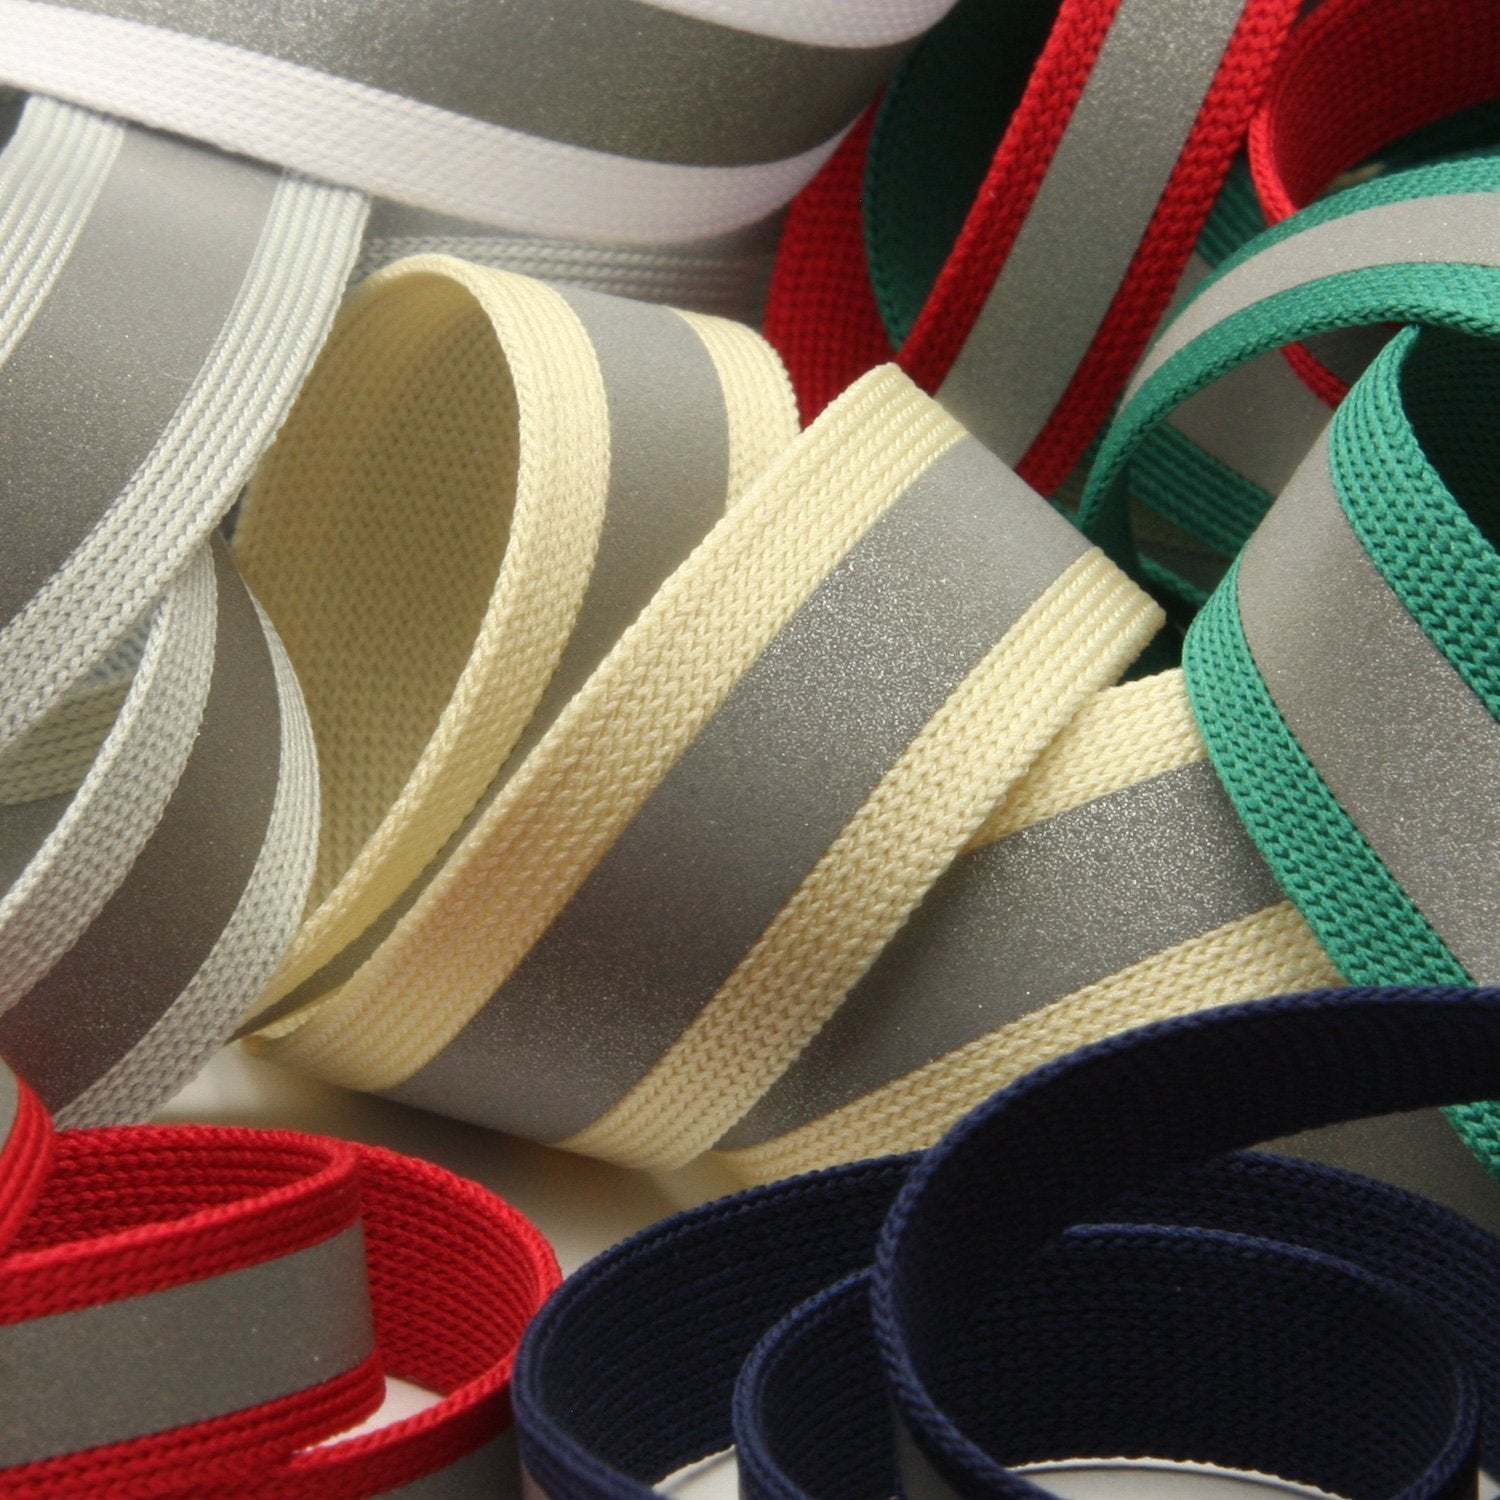 FUJIYAMA RIBBON [Wholesale] Reflect Knit Tape 15mm 30 Meters Roll